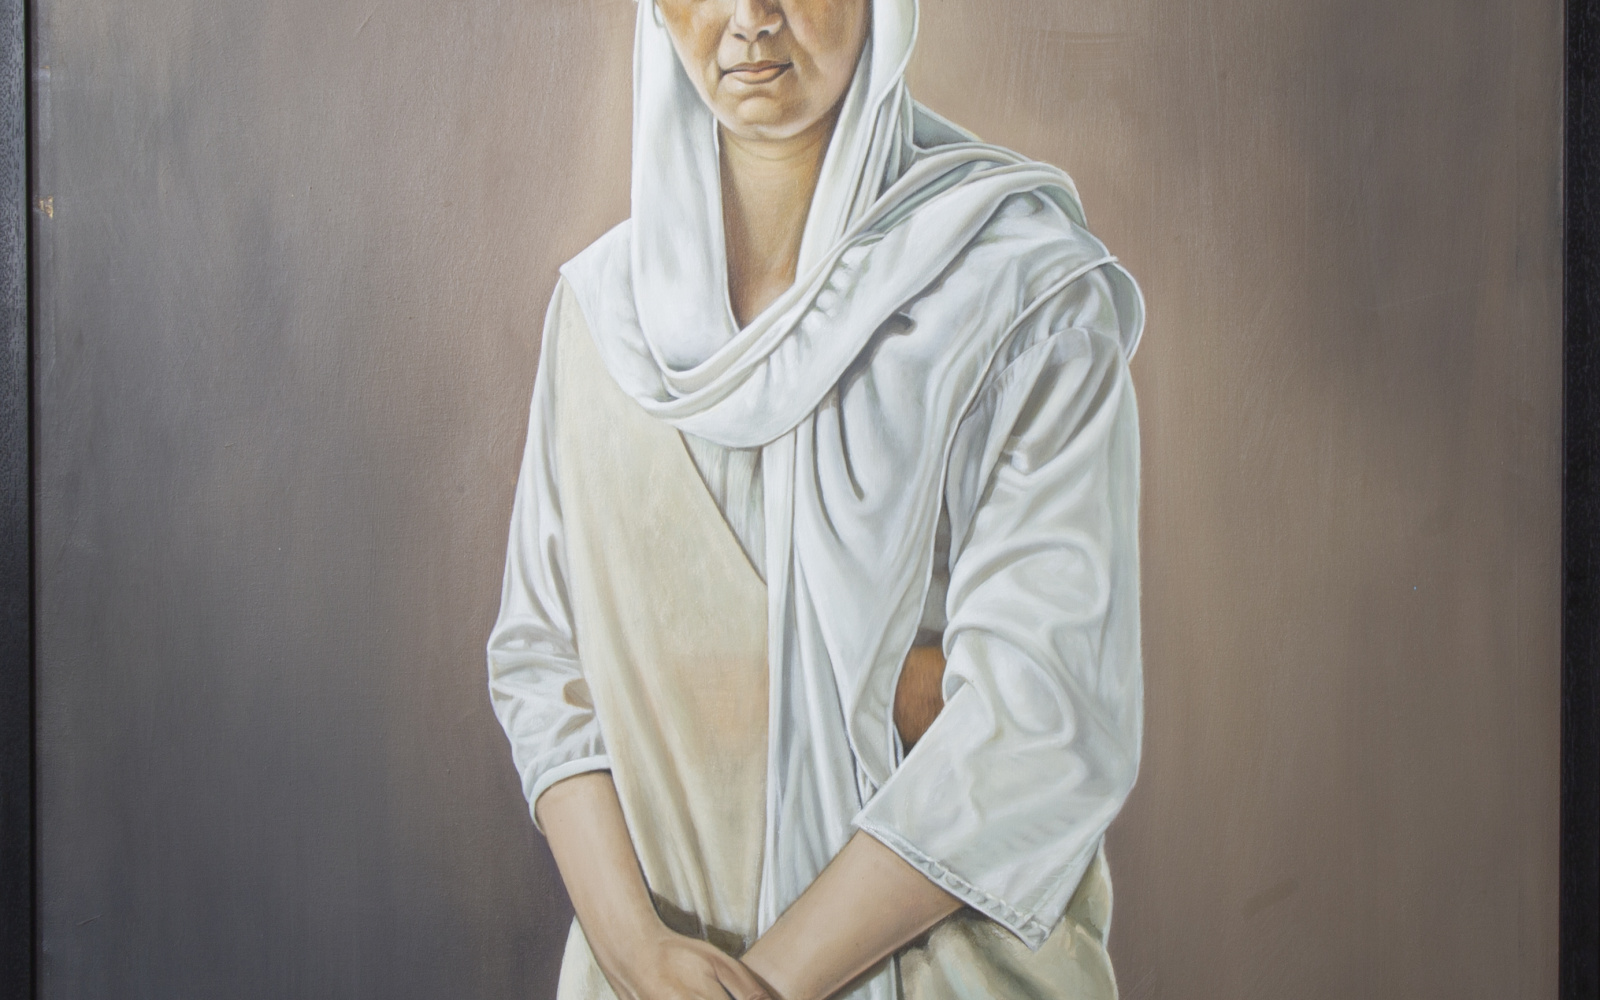 Zu sehen ist ein Gemälde mit einer Frau, die in weiß verhüllt ist. 